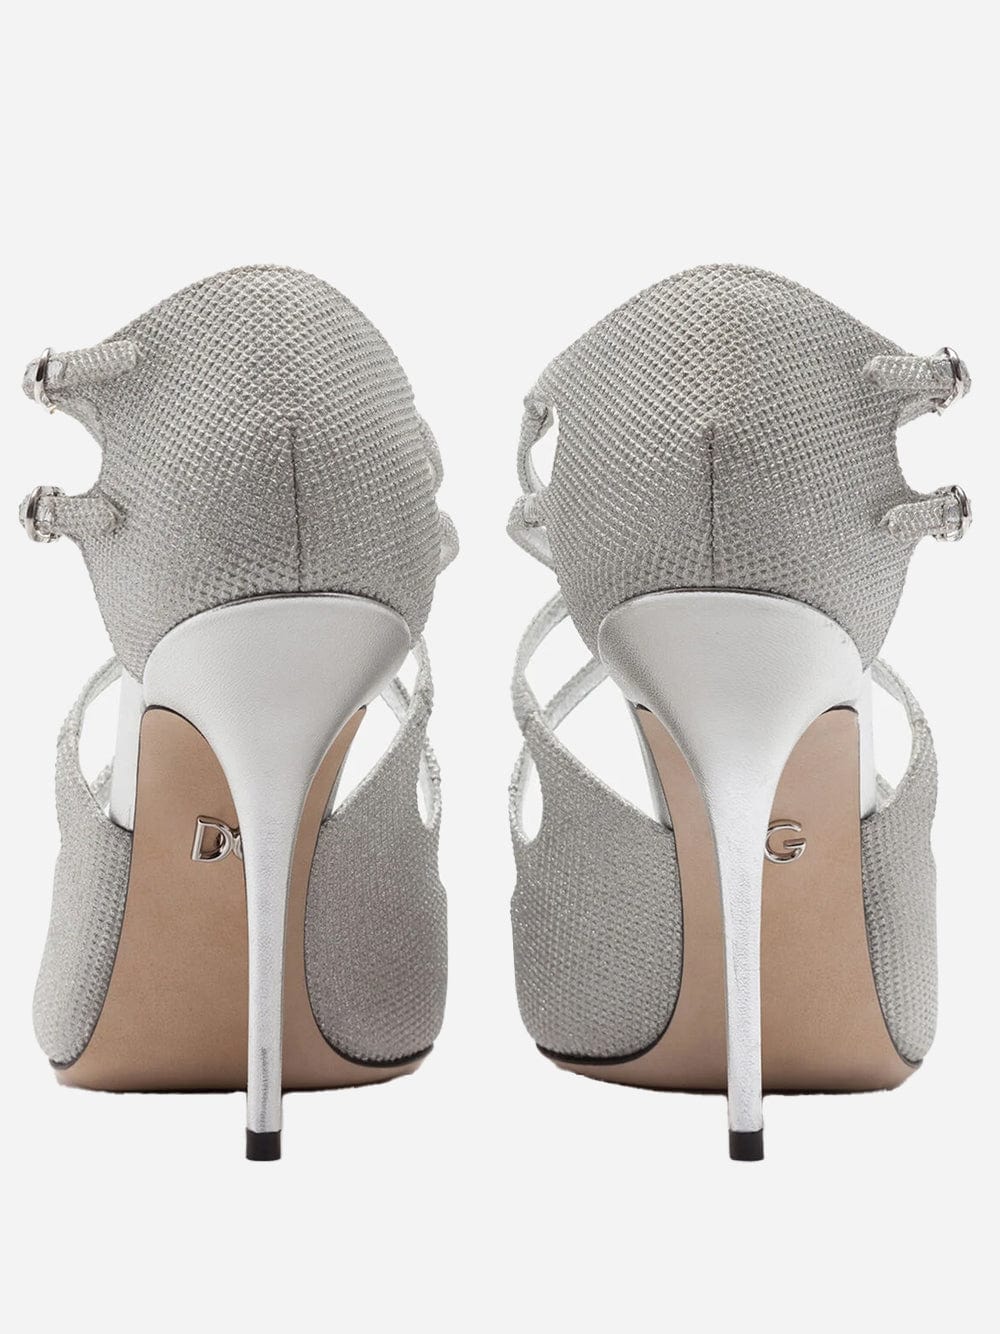 Dolce & Gabbana Glittery Nappa Mordore Sandals